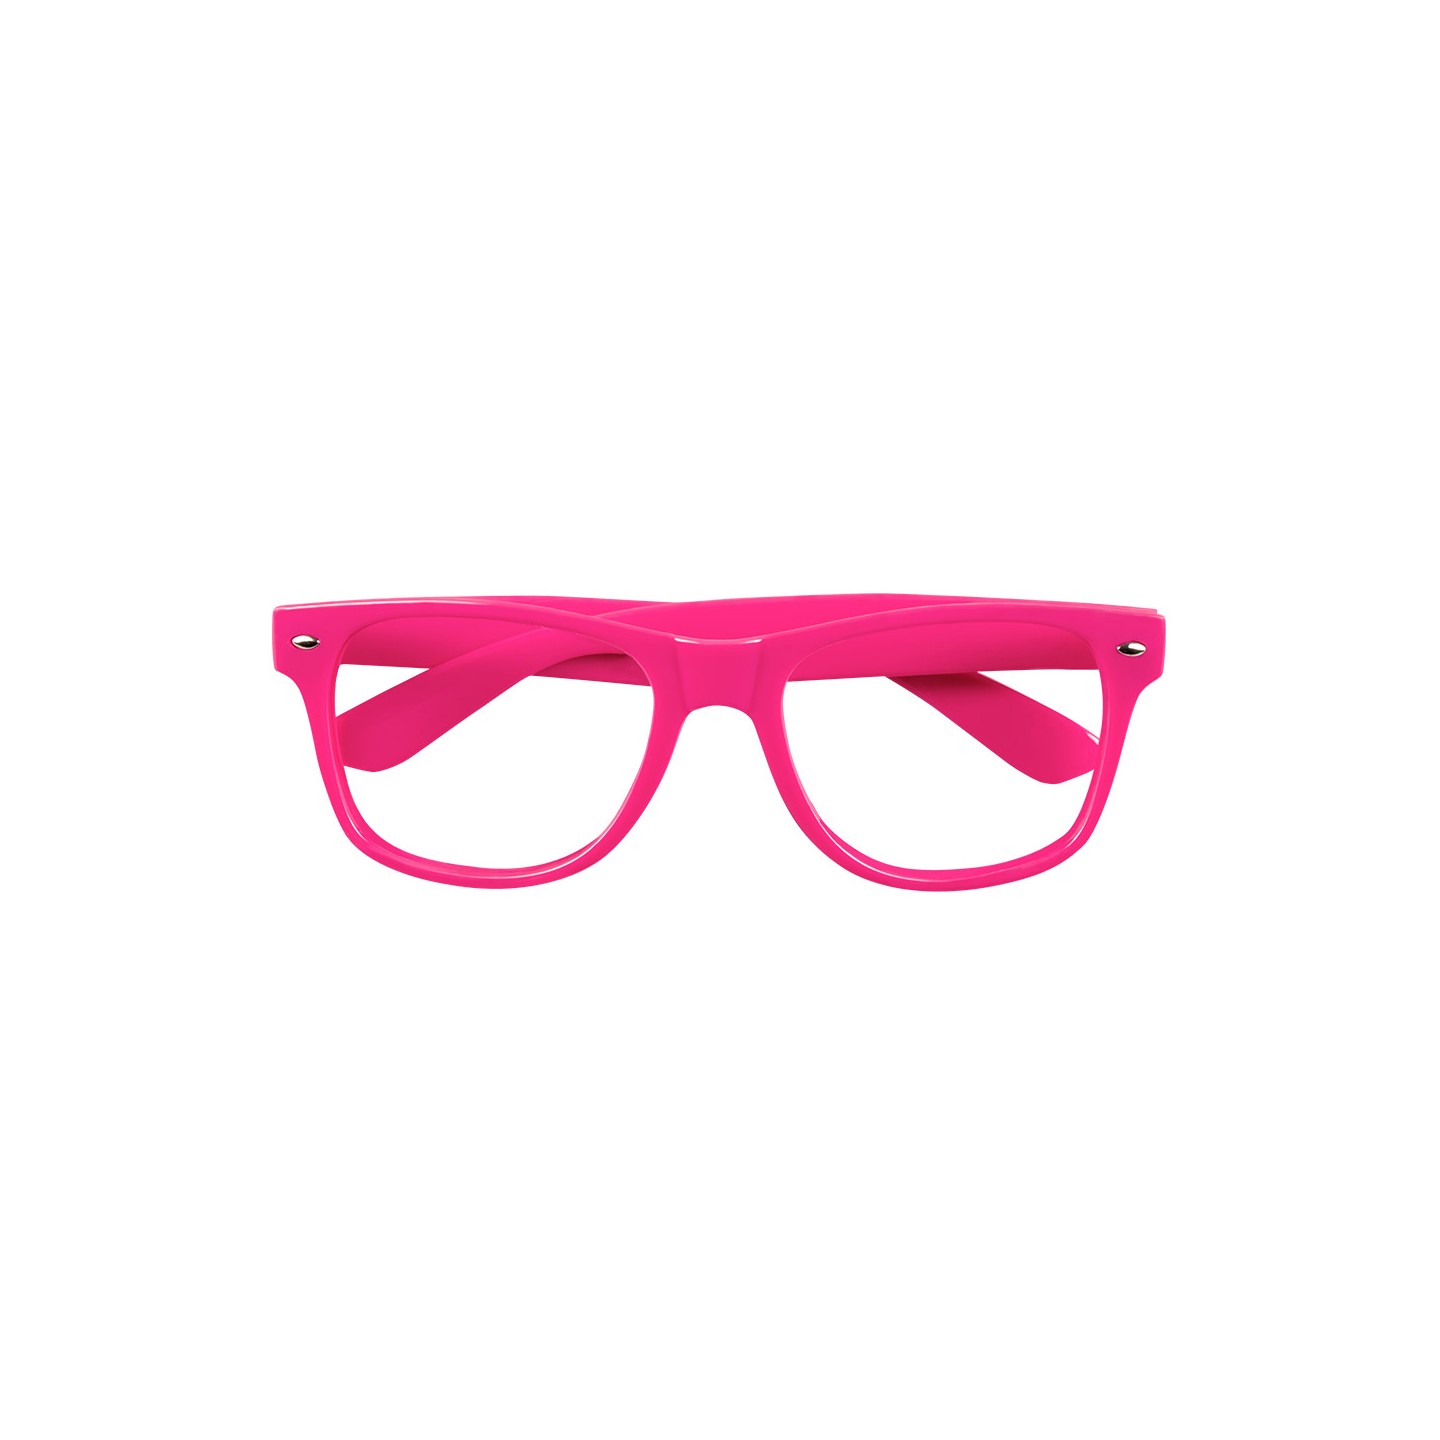 fluo neon roze bril zonder glazen